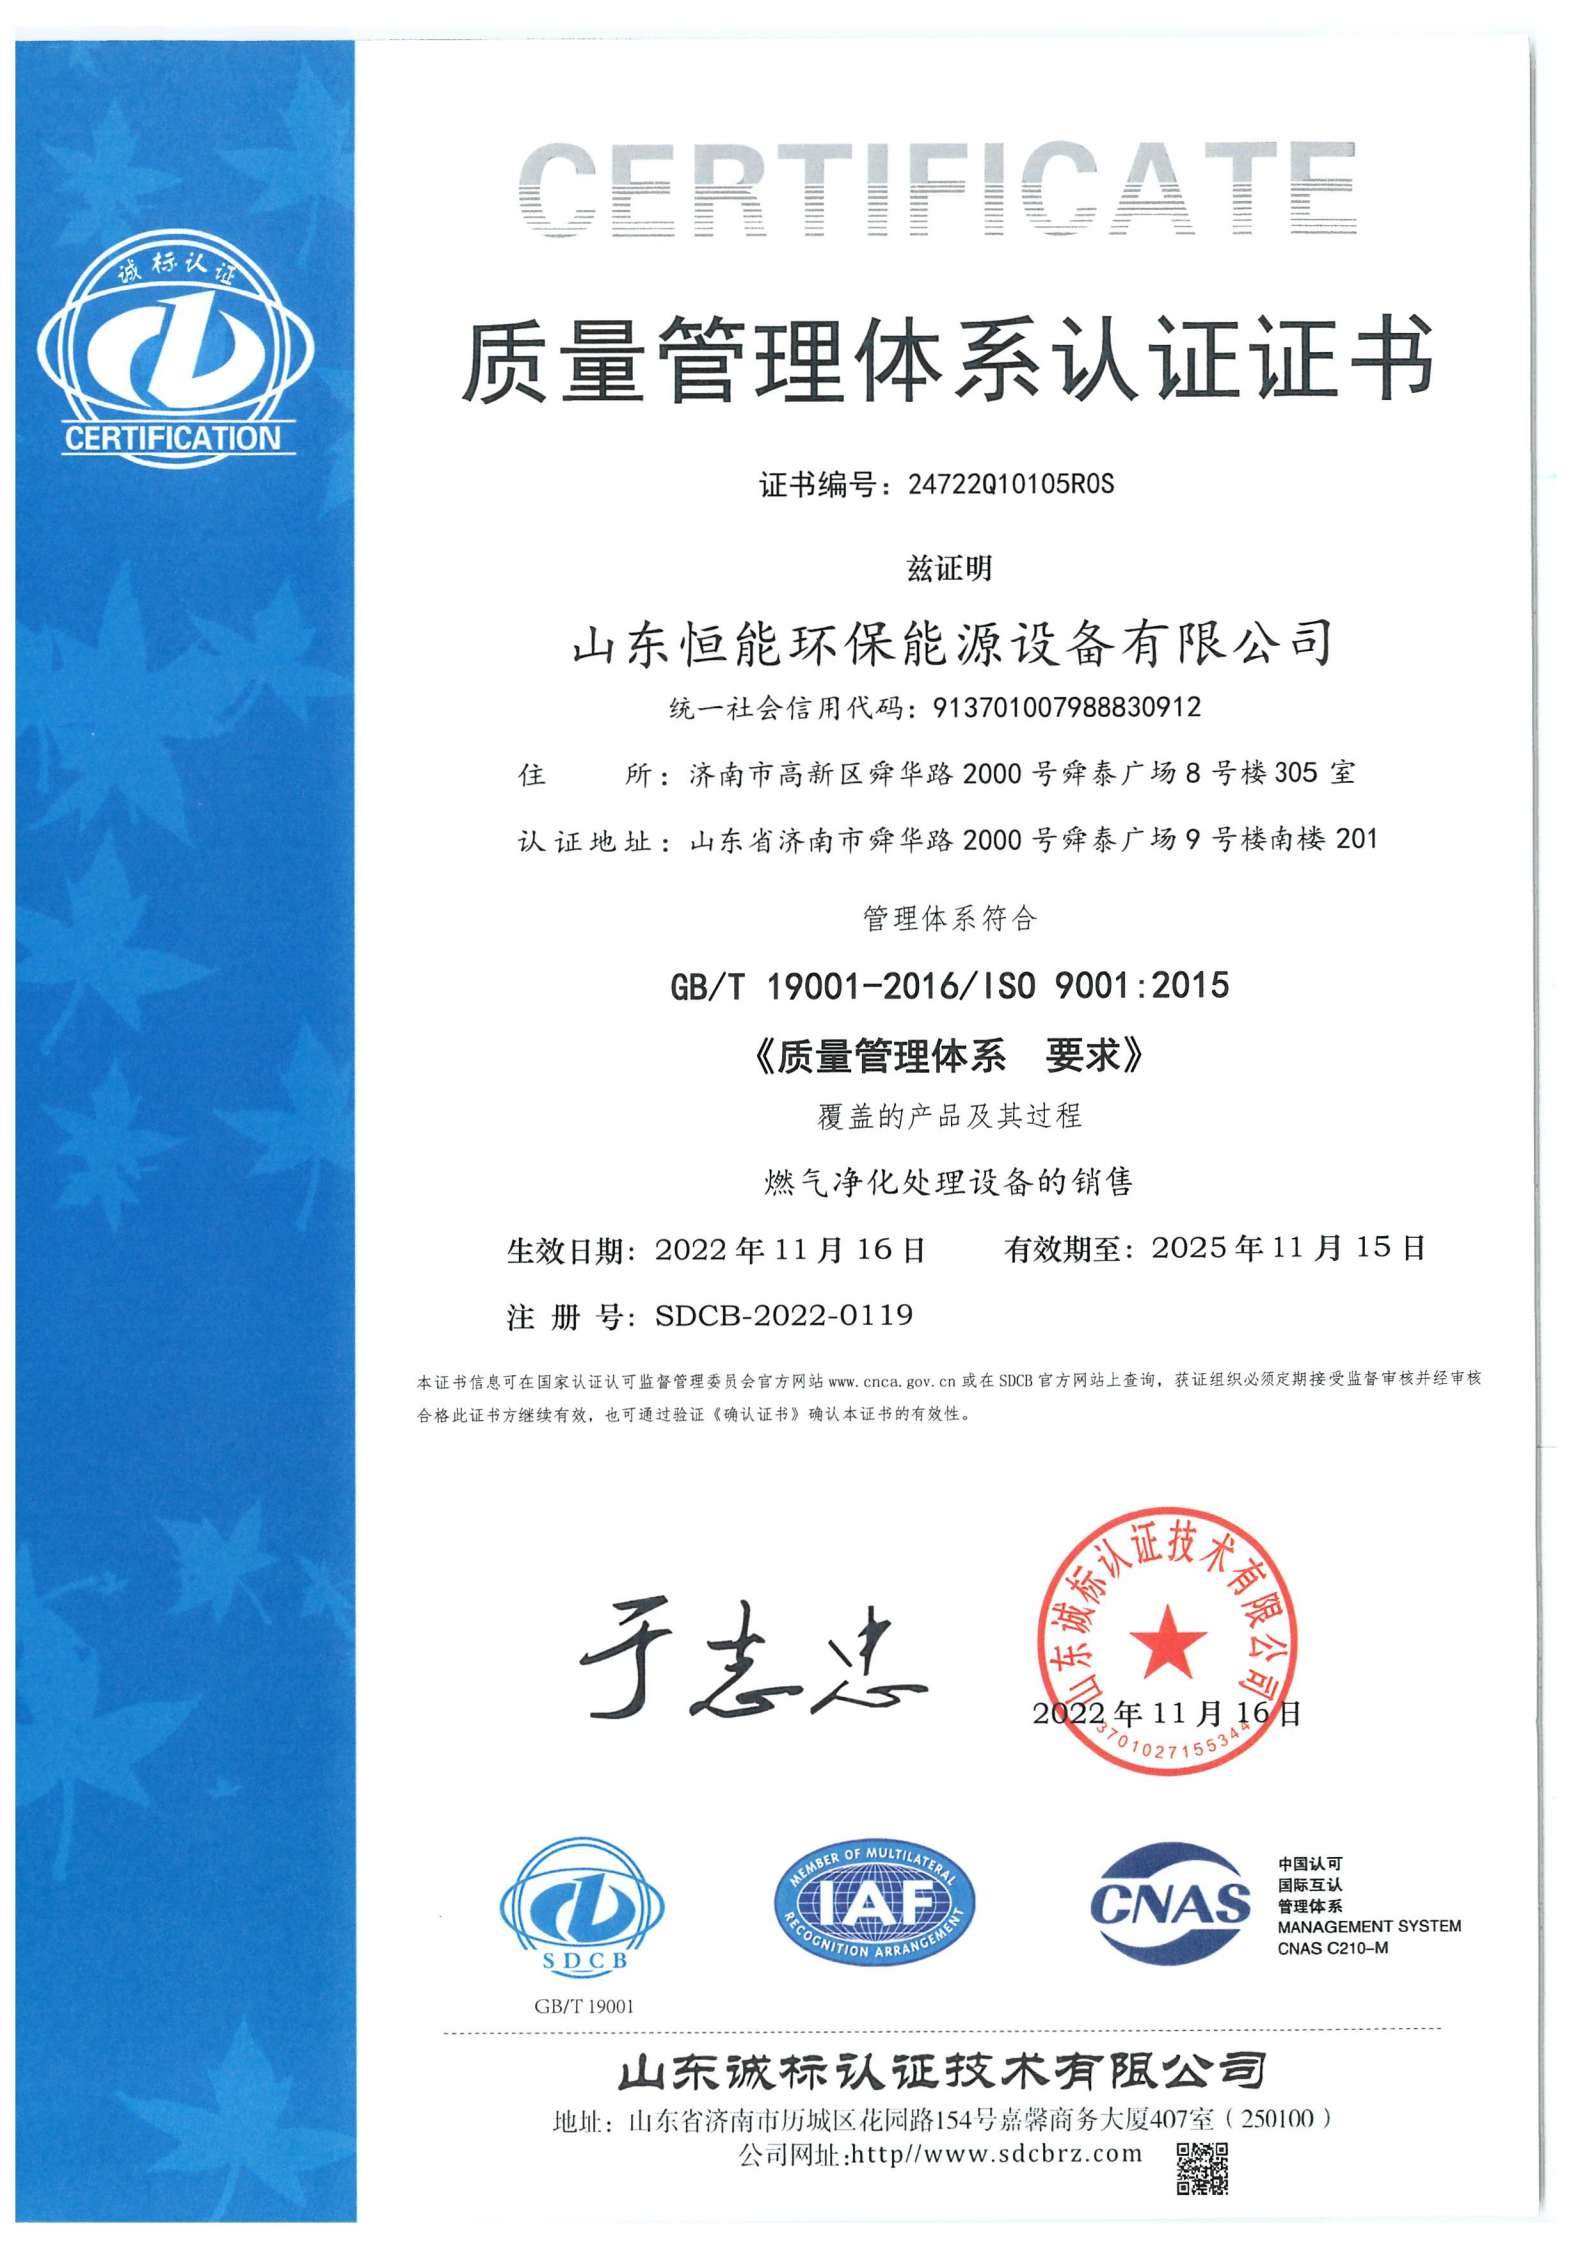 澳门37000威尼斯质量管理体系证书-中文_00